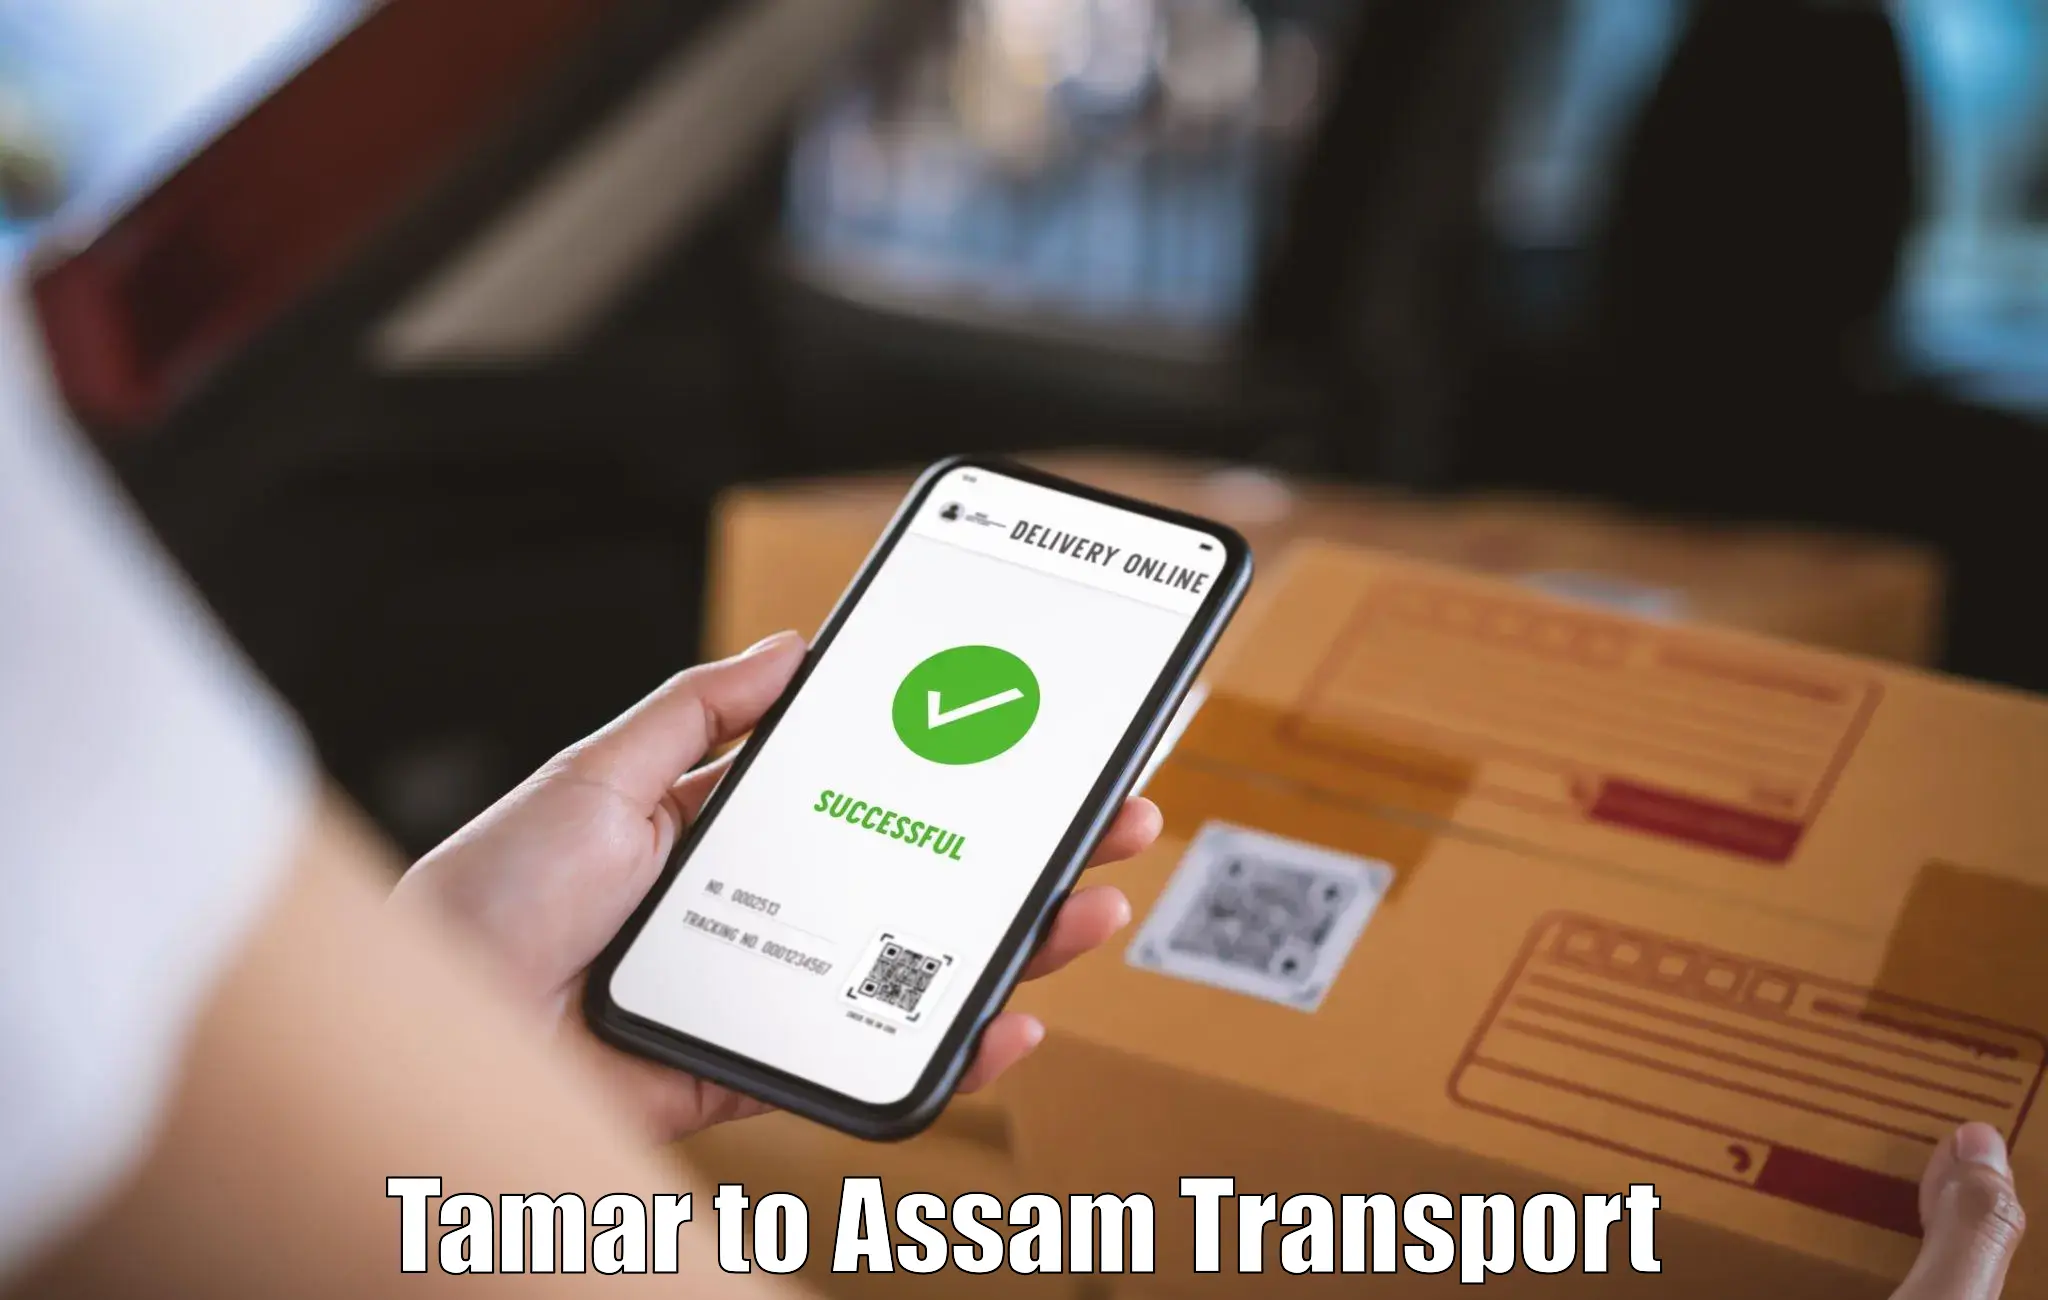 Intercity transport Tamar to Tamarhat